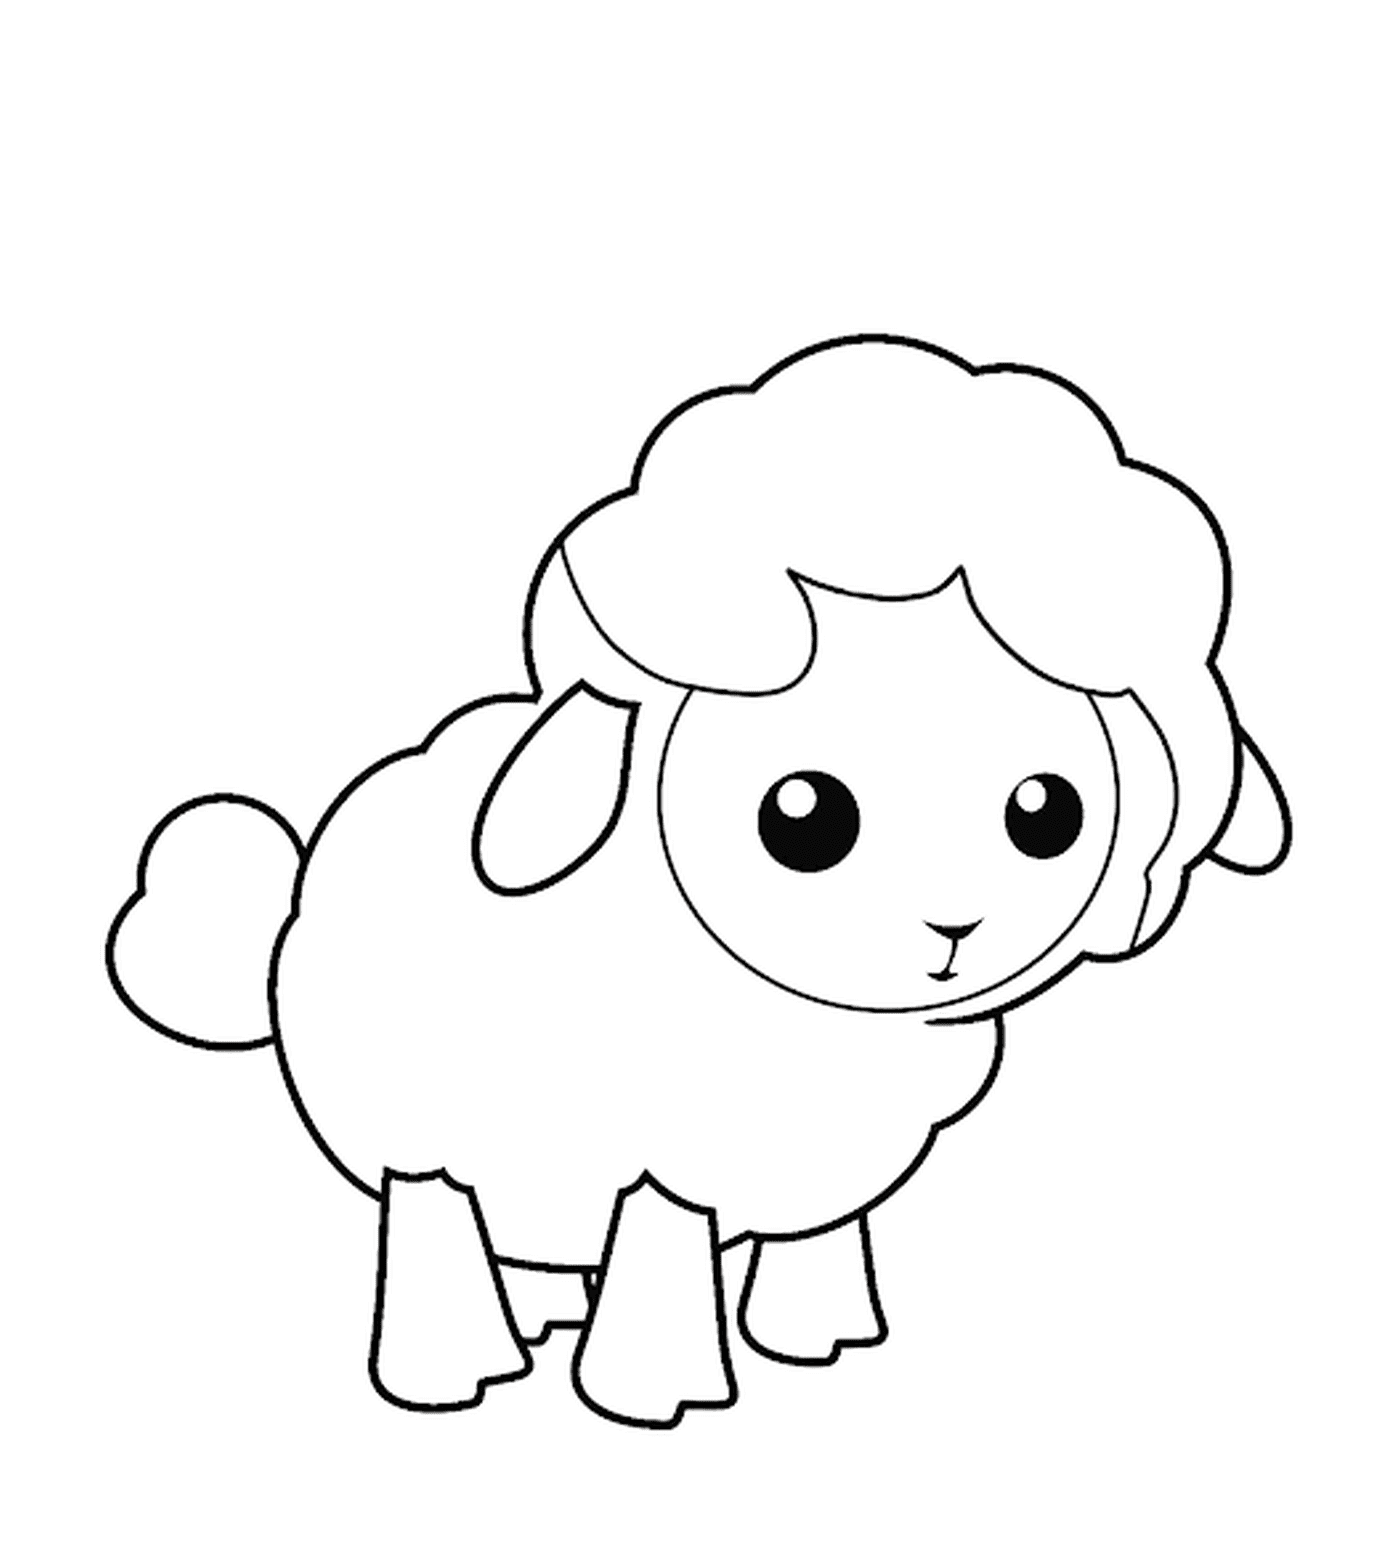  L'agnello è mostrato come un'illustrazione 